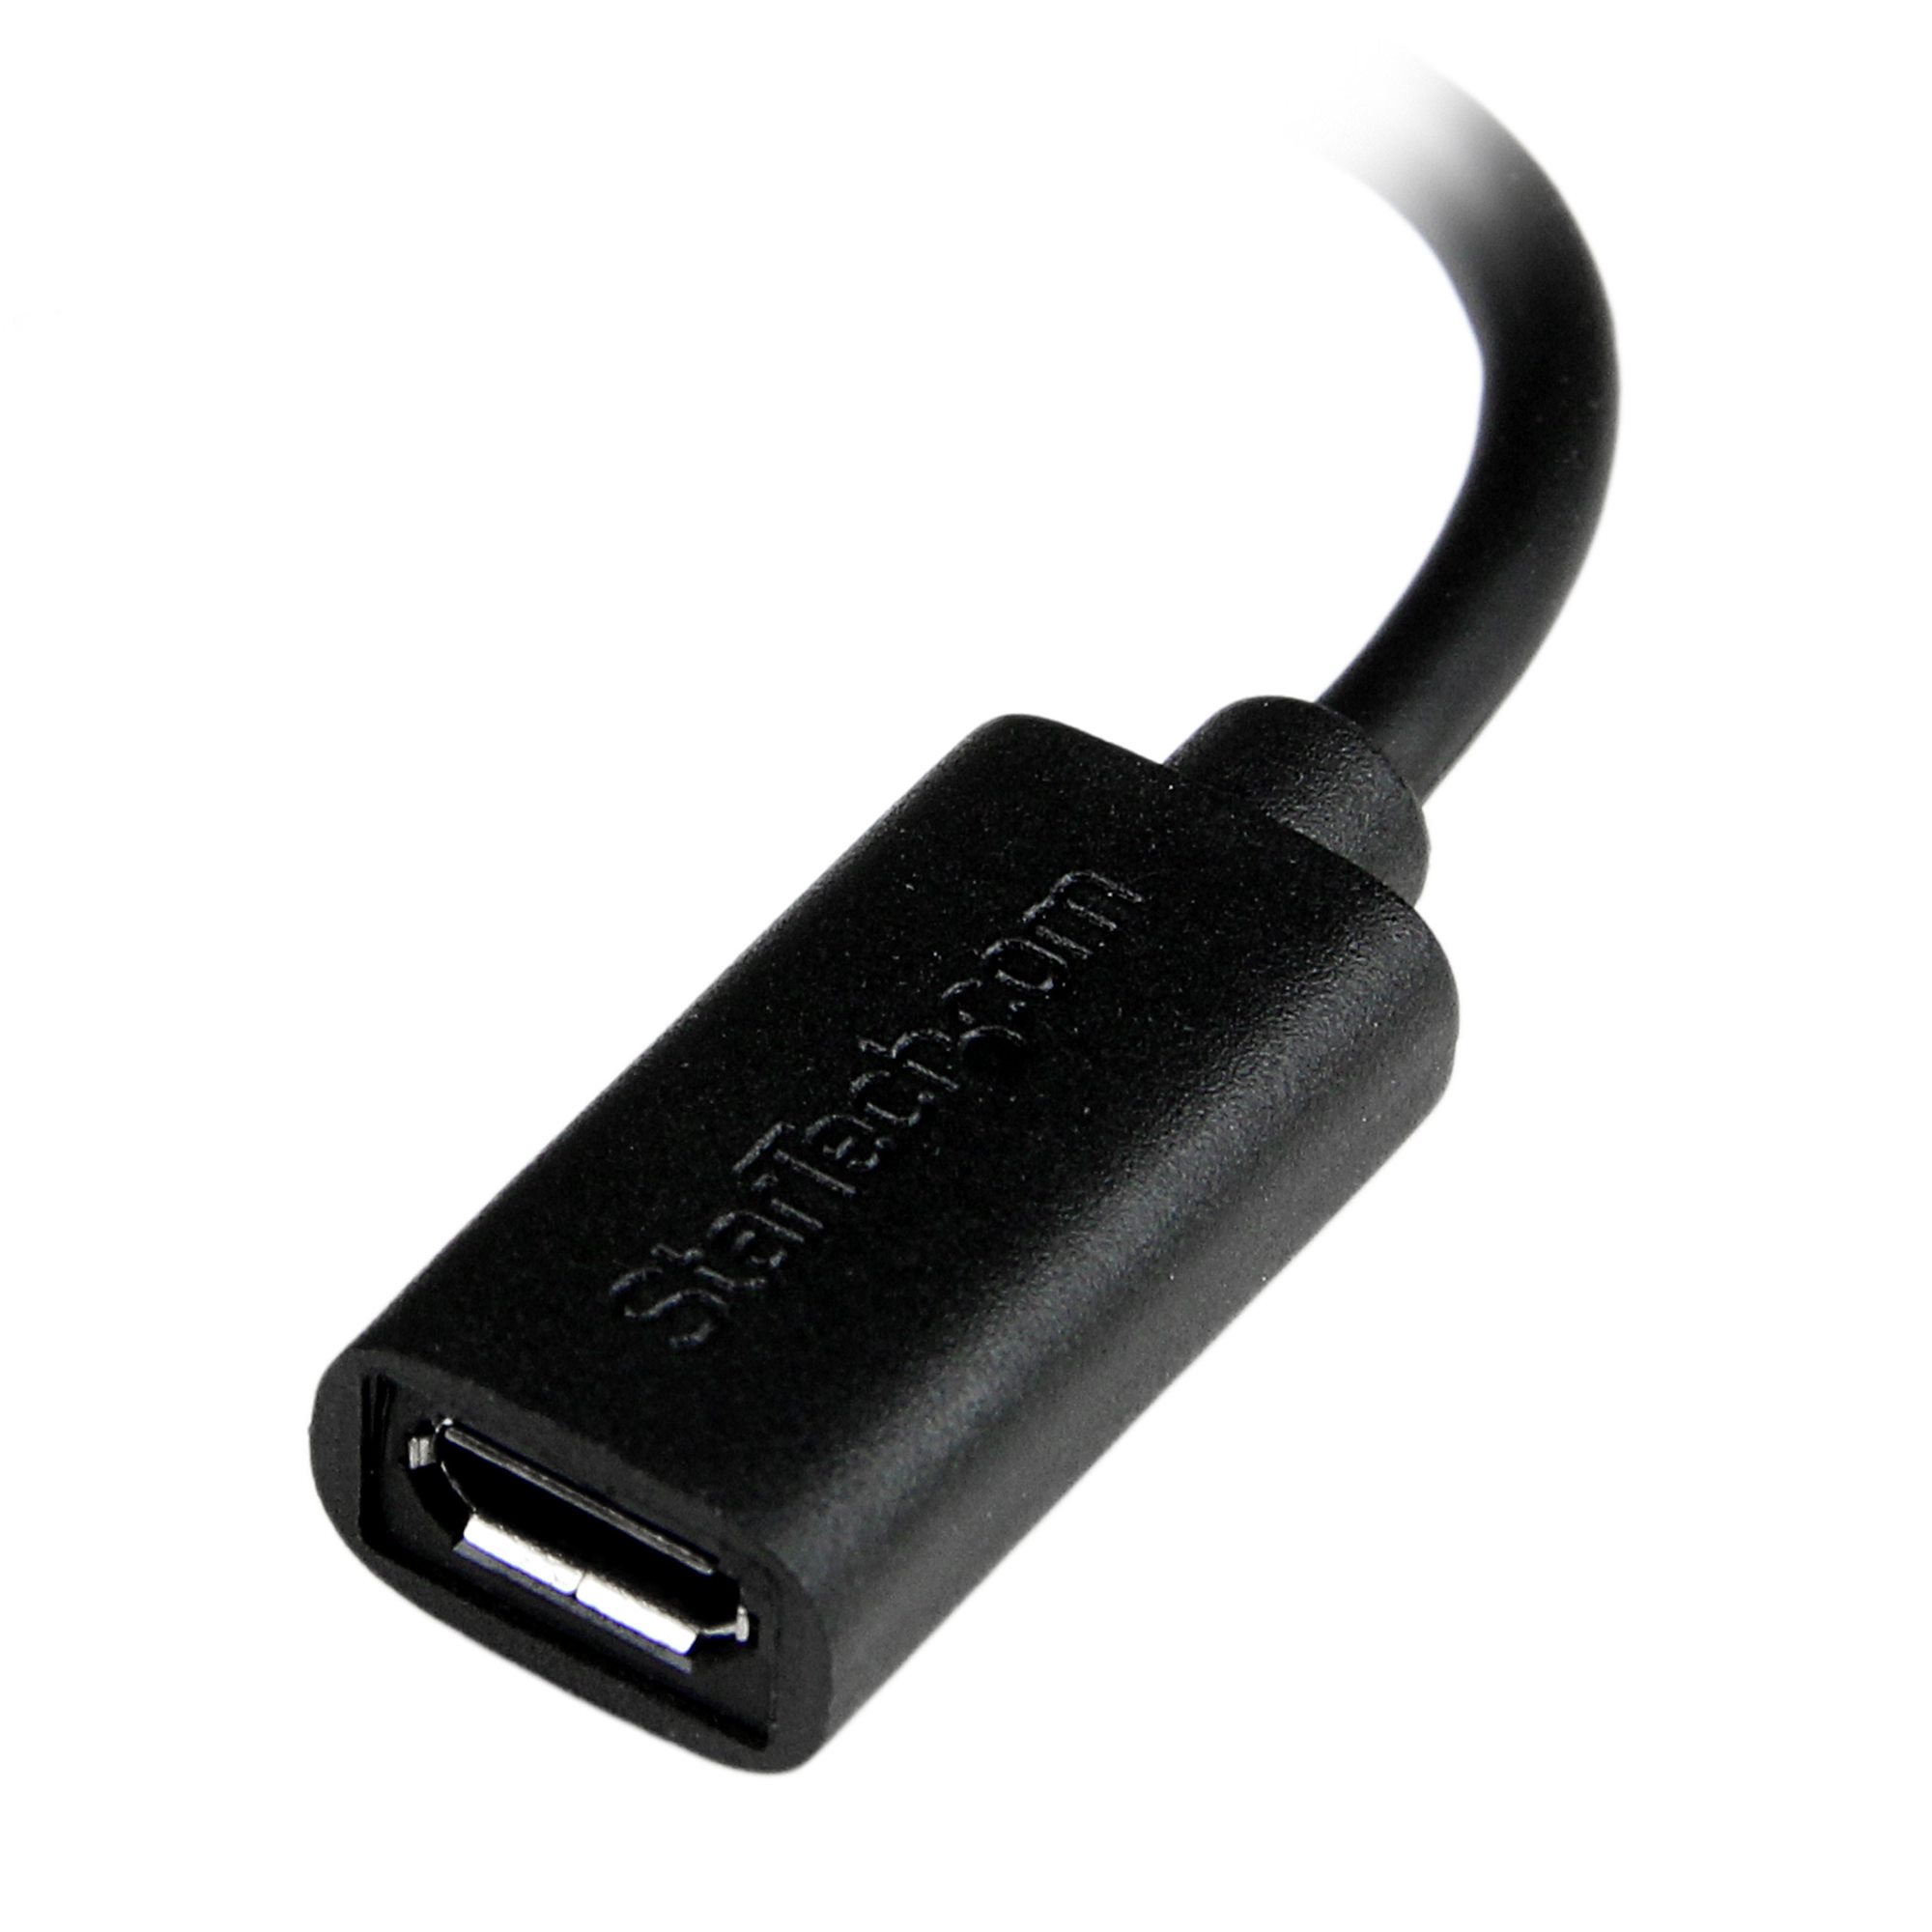 MicroTest de l'adaptateur USB-C vers jack de Startech: Cool mais